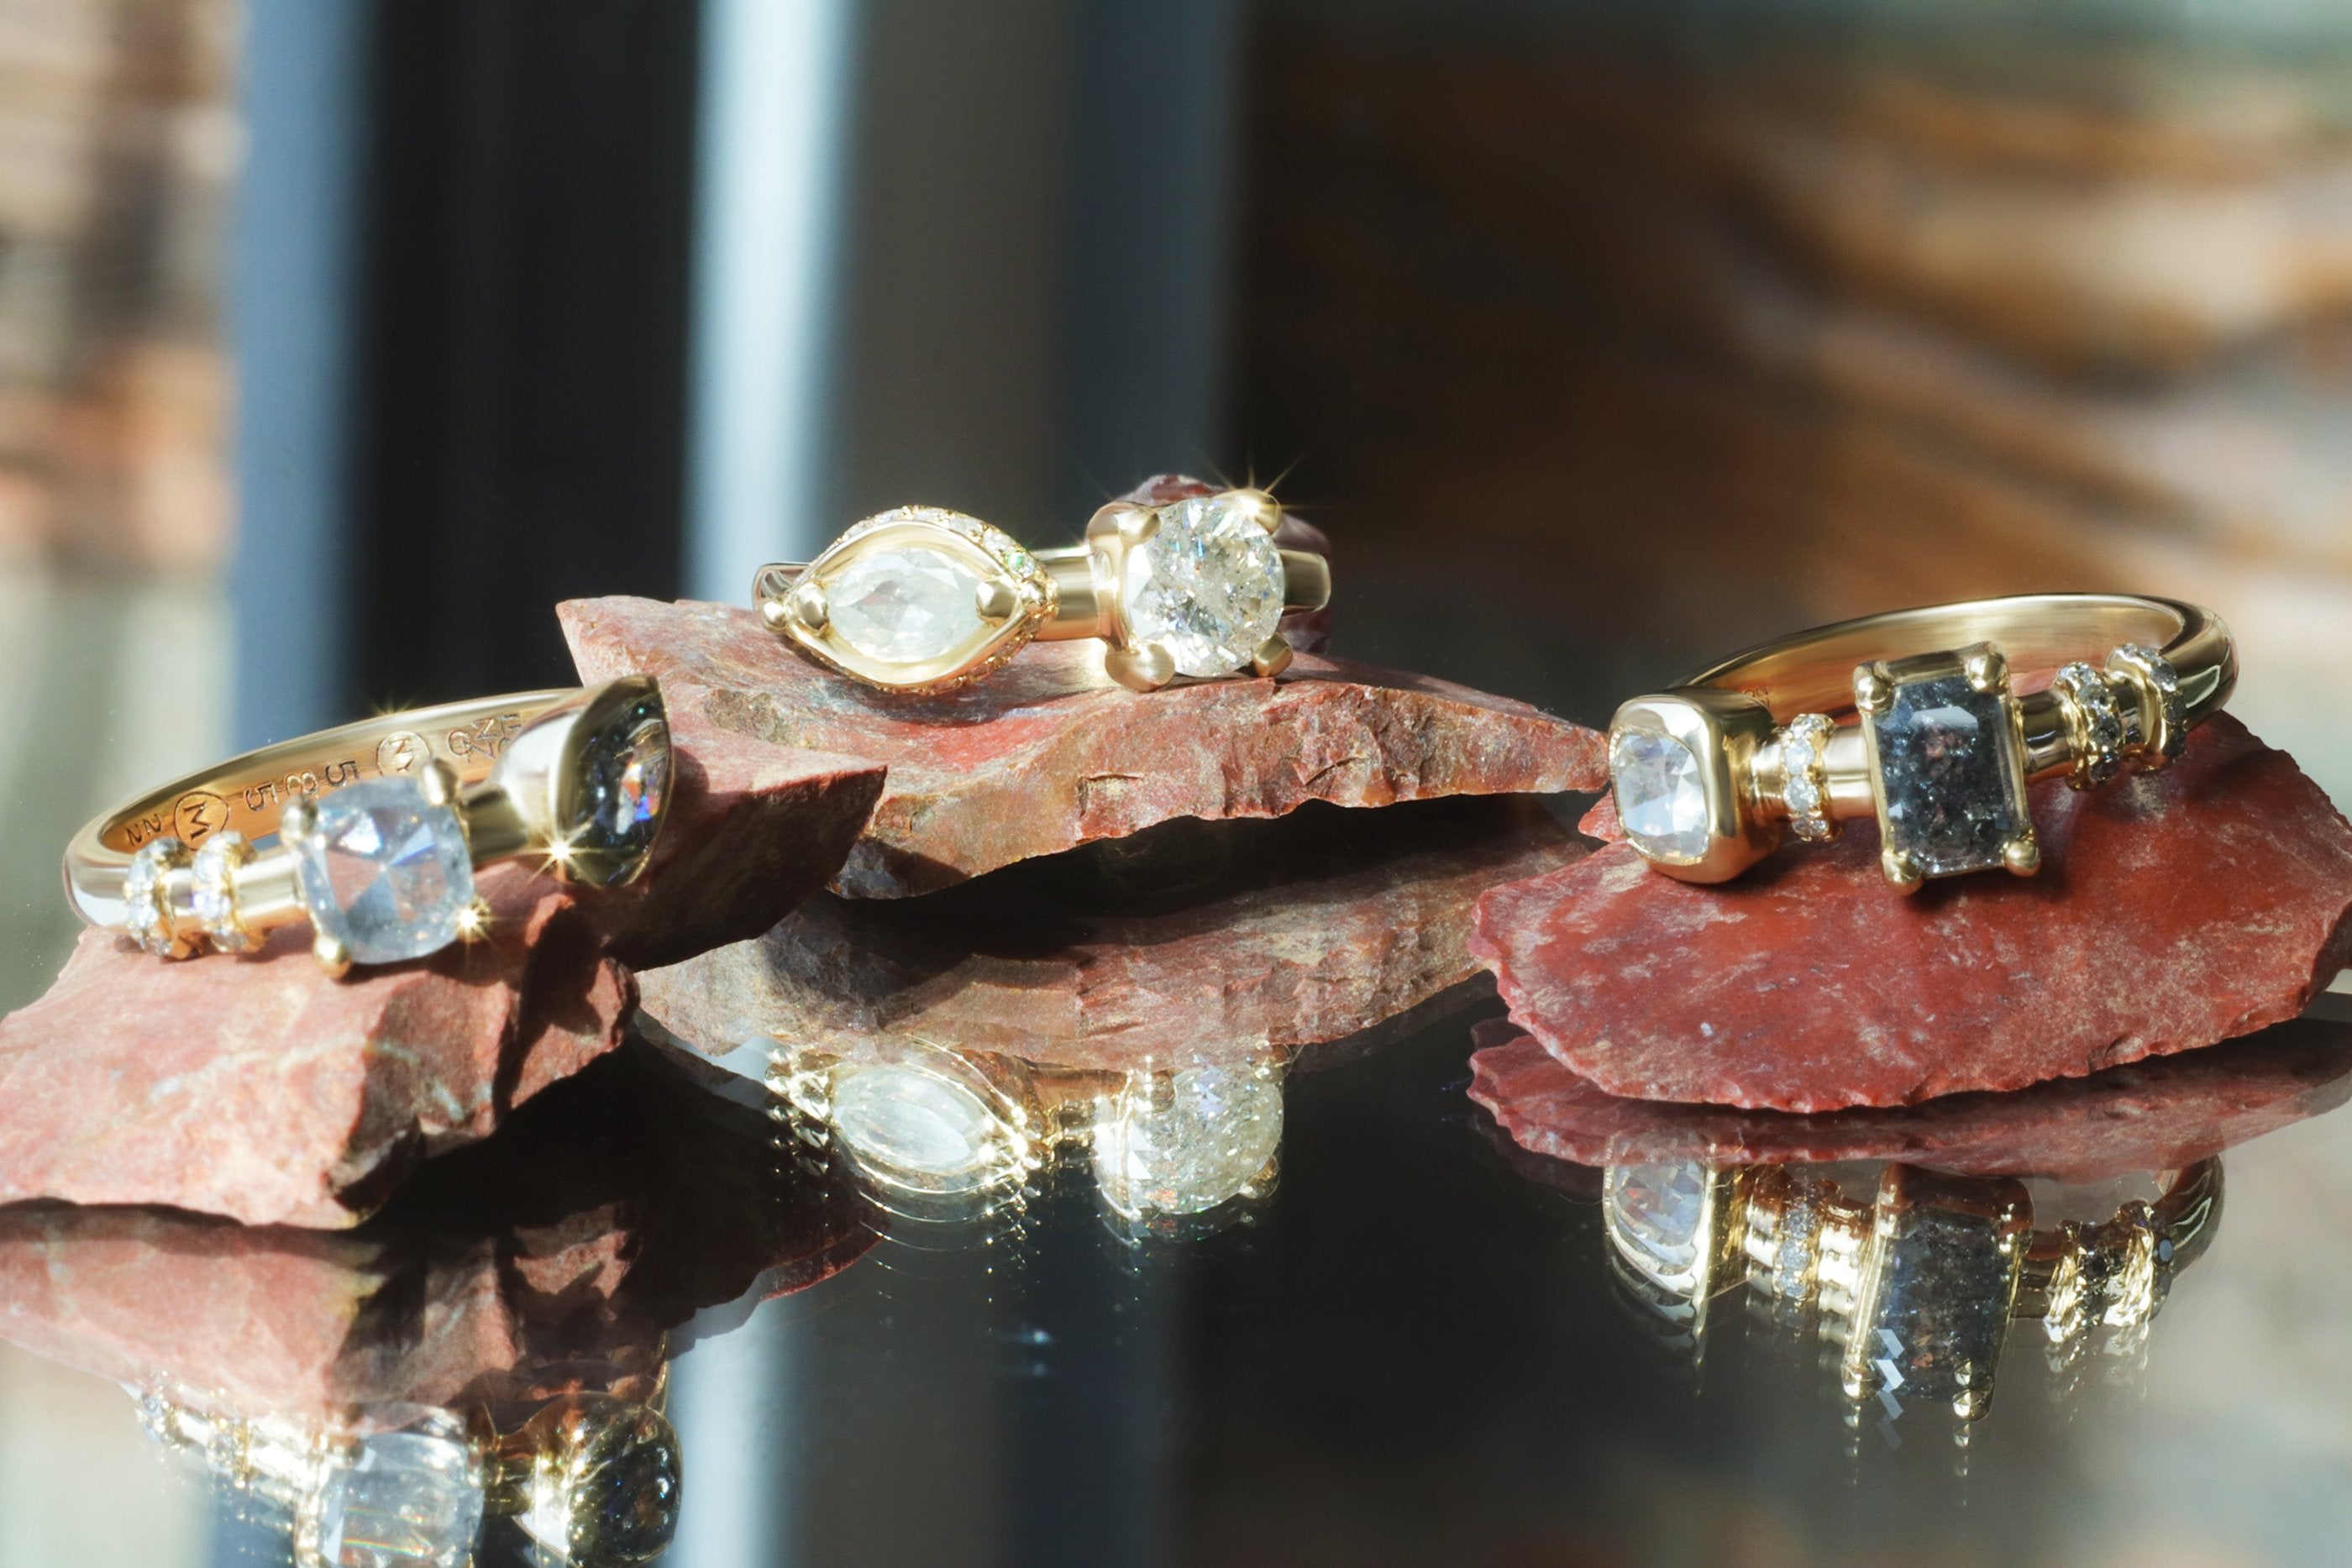 Group of Alfonzo Pieces: Nebula 3 / Diamond Ring, Nebula 4 / Diamond Ring, and Nebula 1 / Diamond Ring